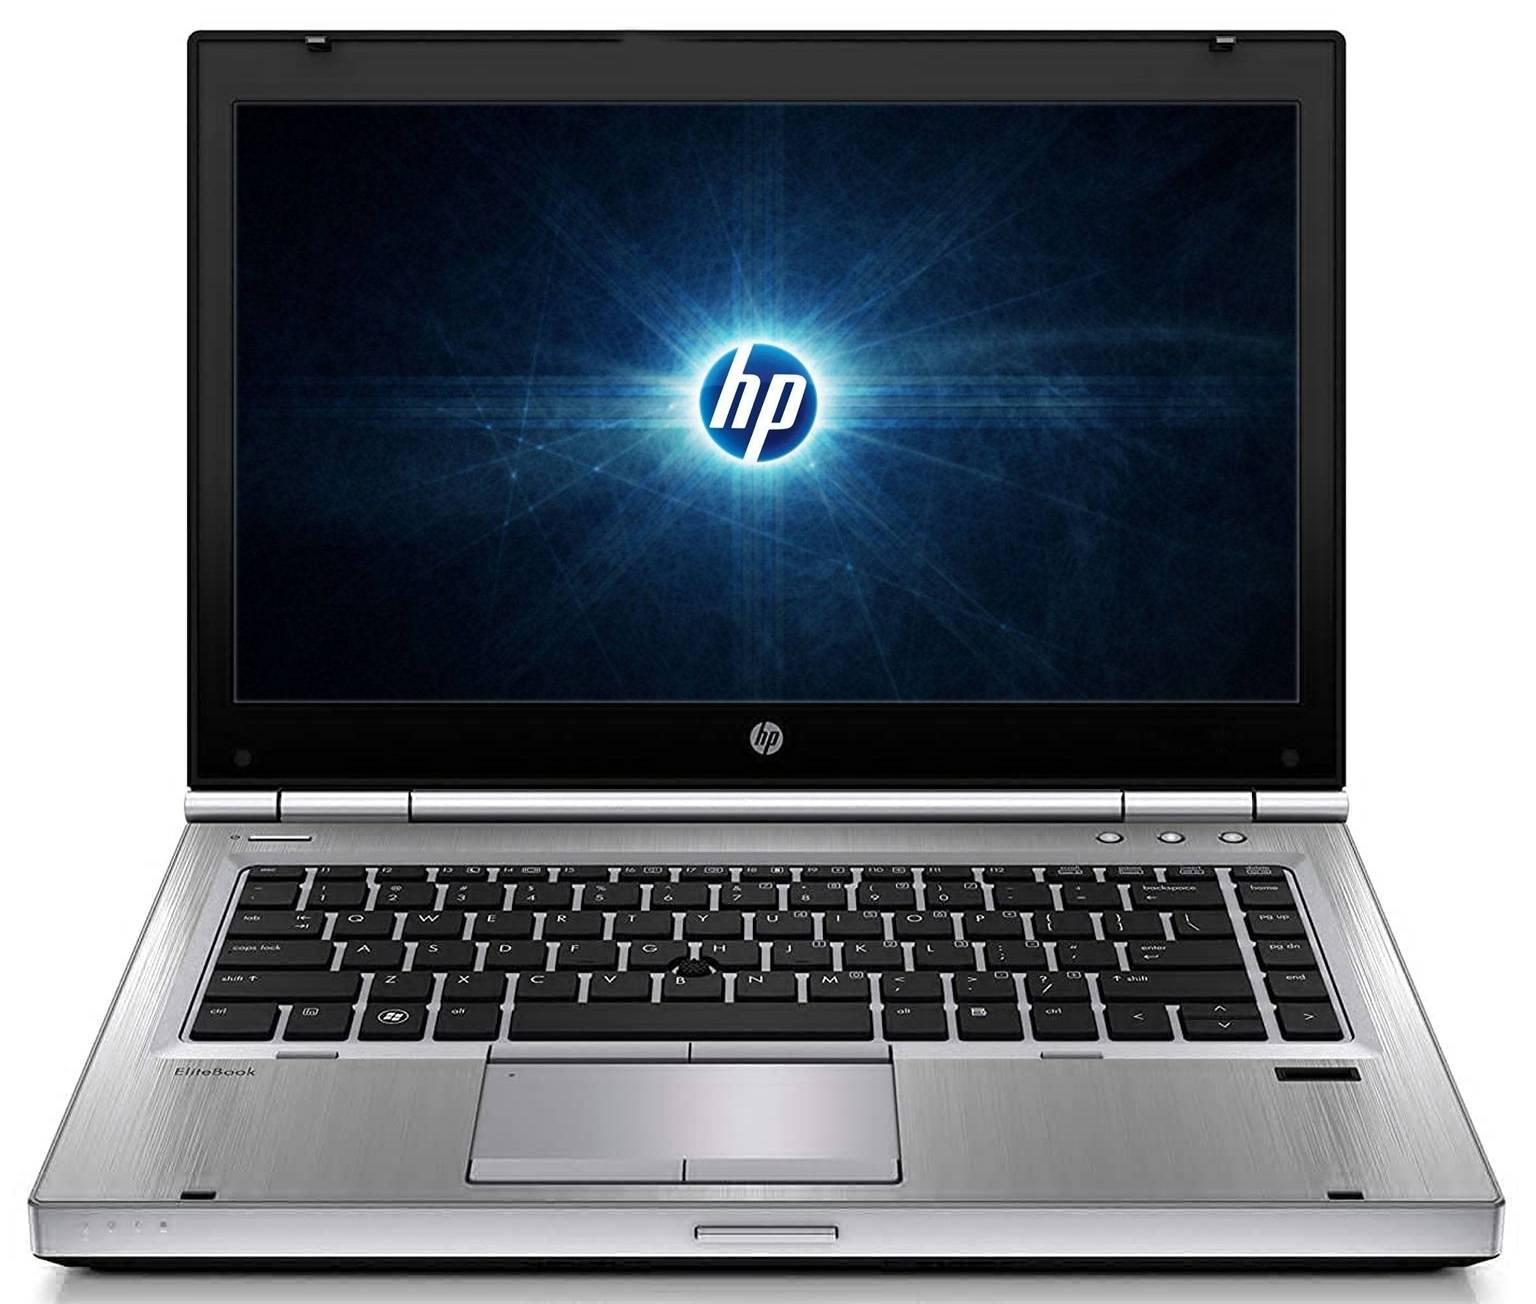 لپتاپ اچ پی استوک (HP) | EliteBook 8570p | avincomp.com